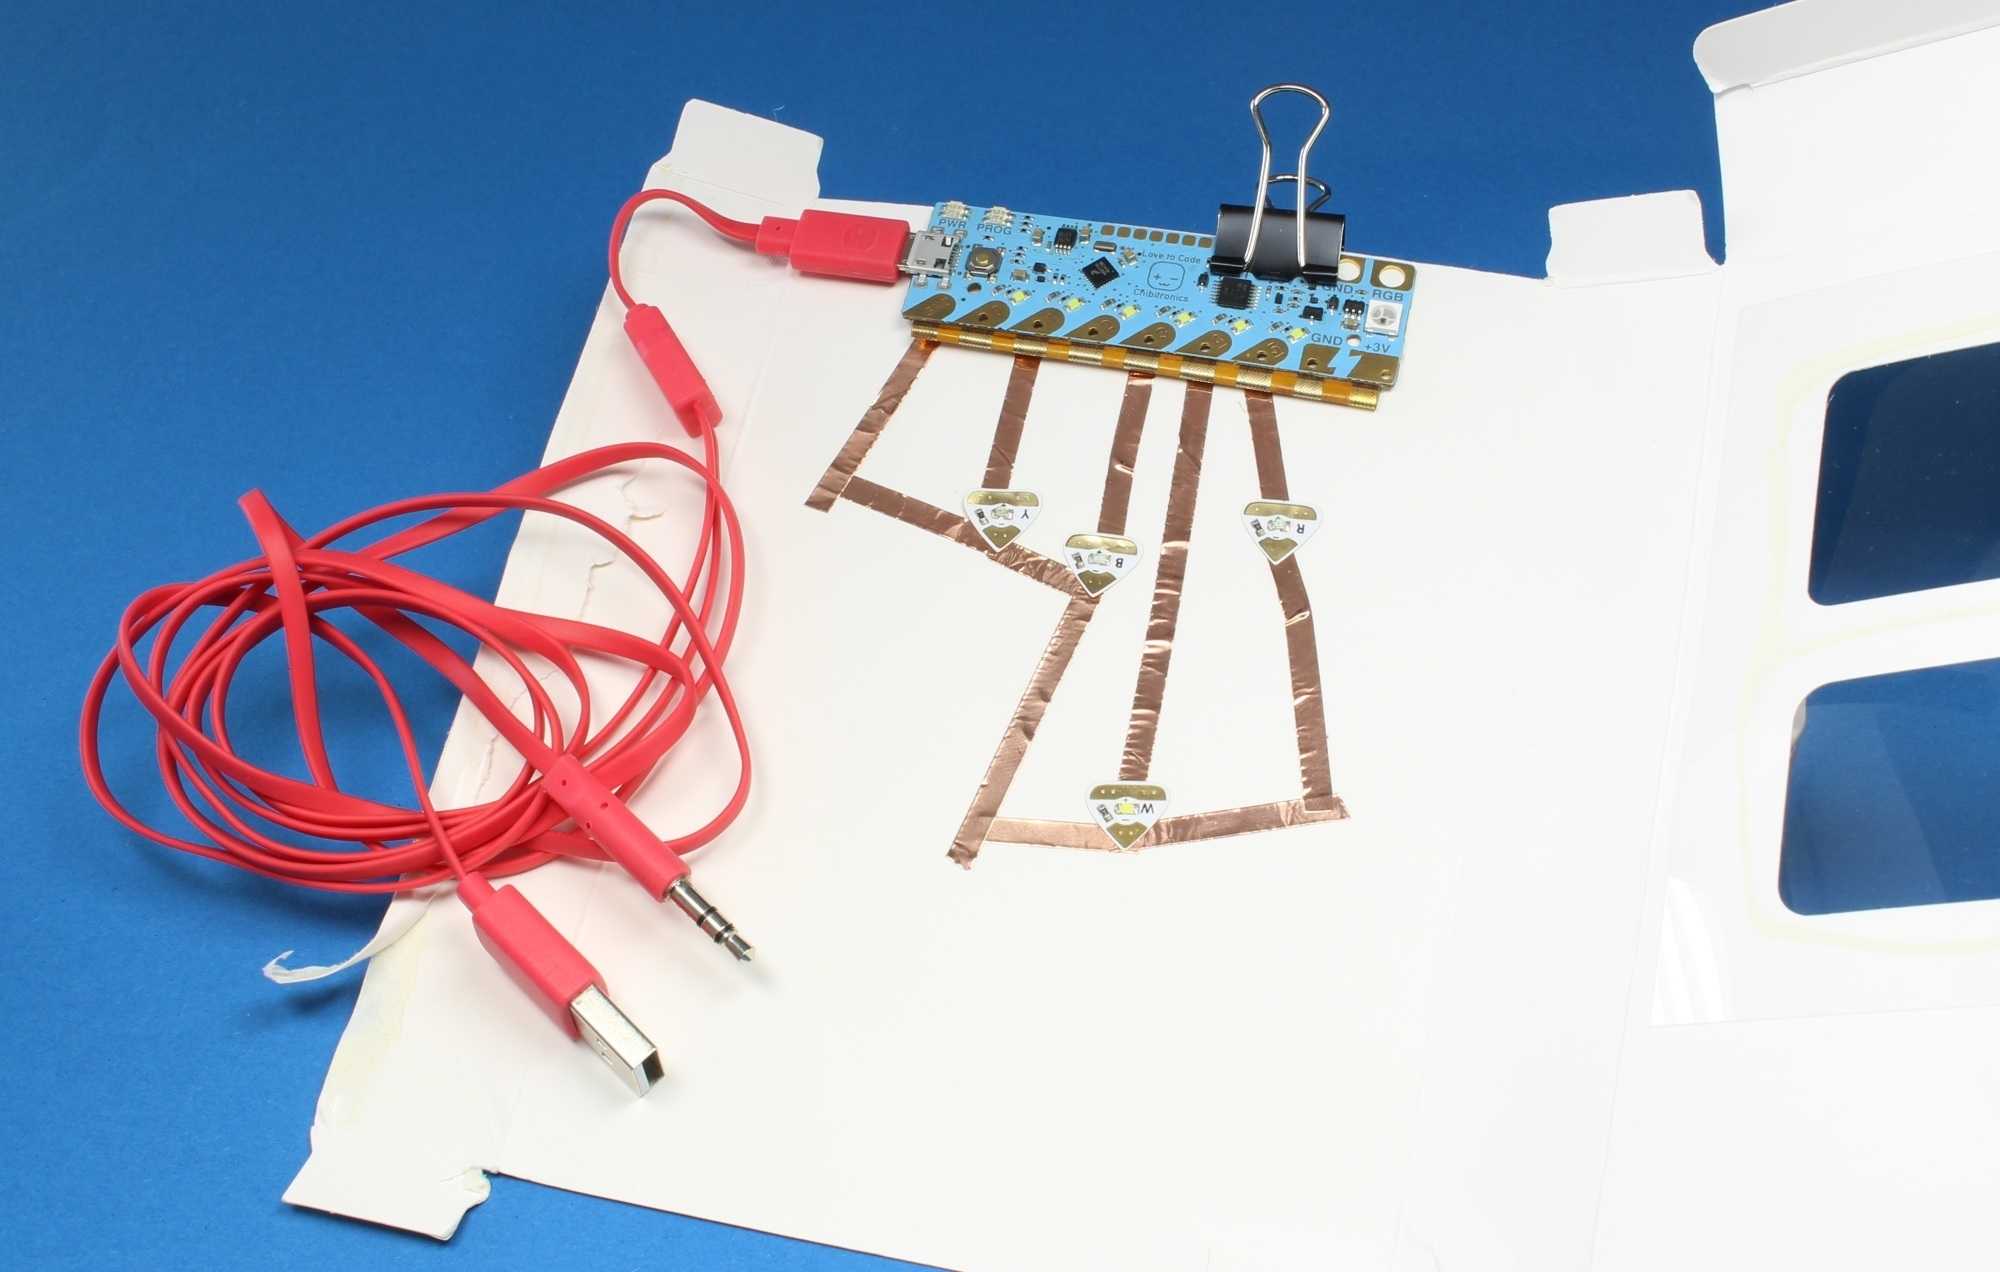 Auf einem weißen Papier ist ein blauer Mikrocontroller festgeklippt. An ihm hängt ein rotes Kabel.